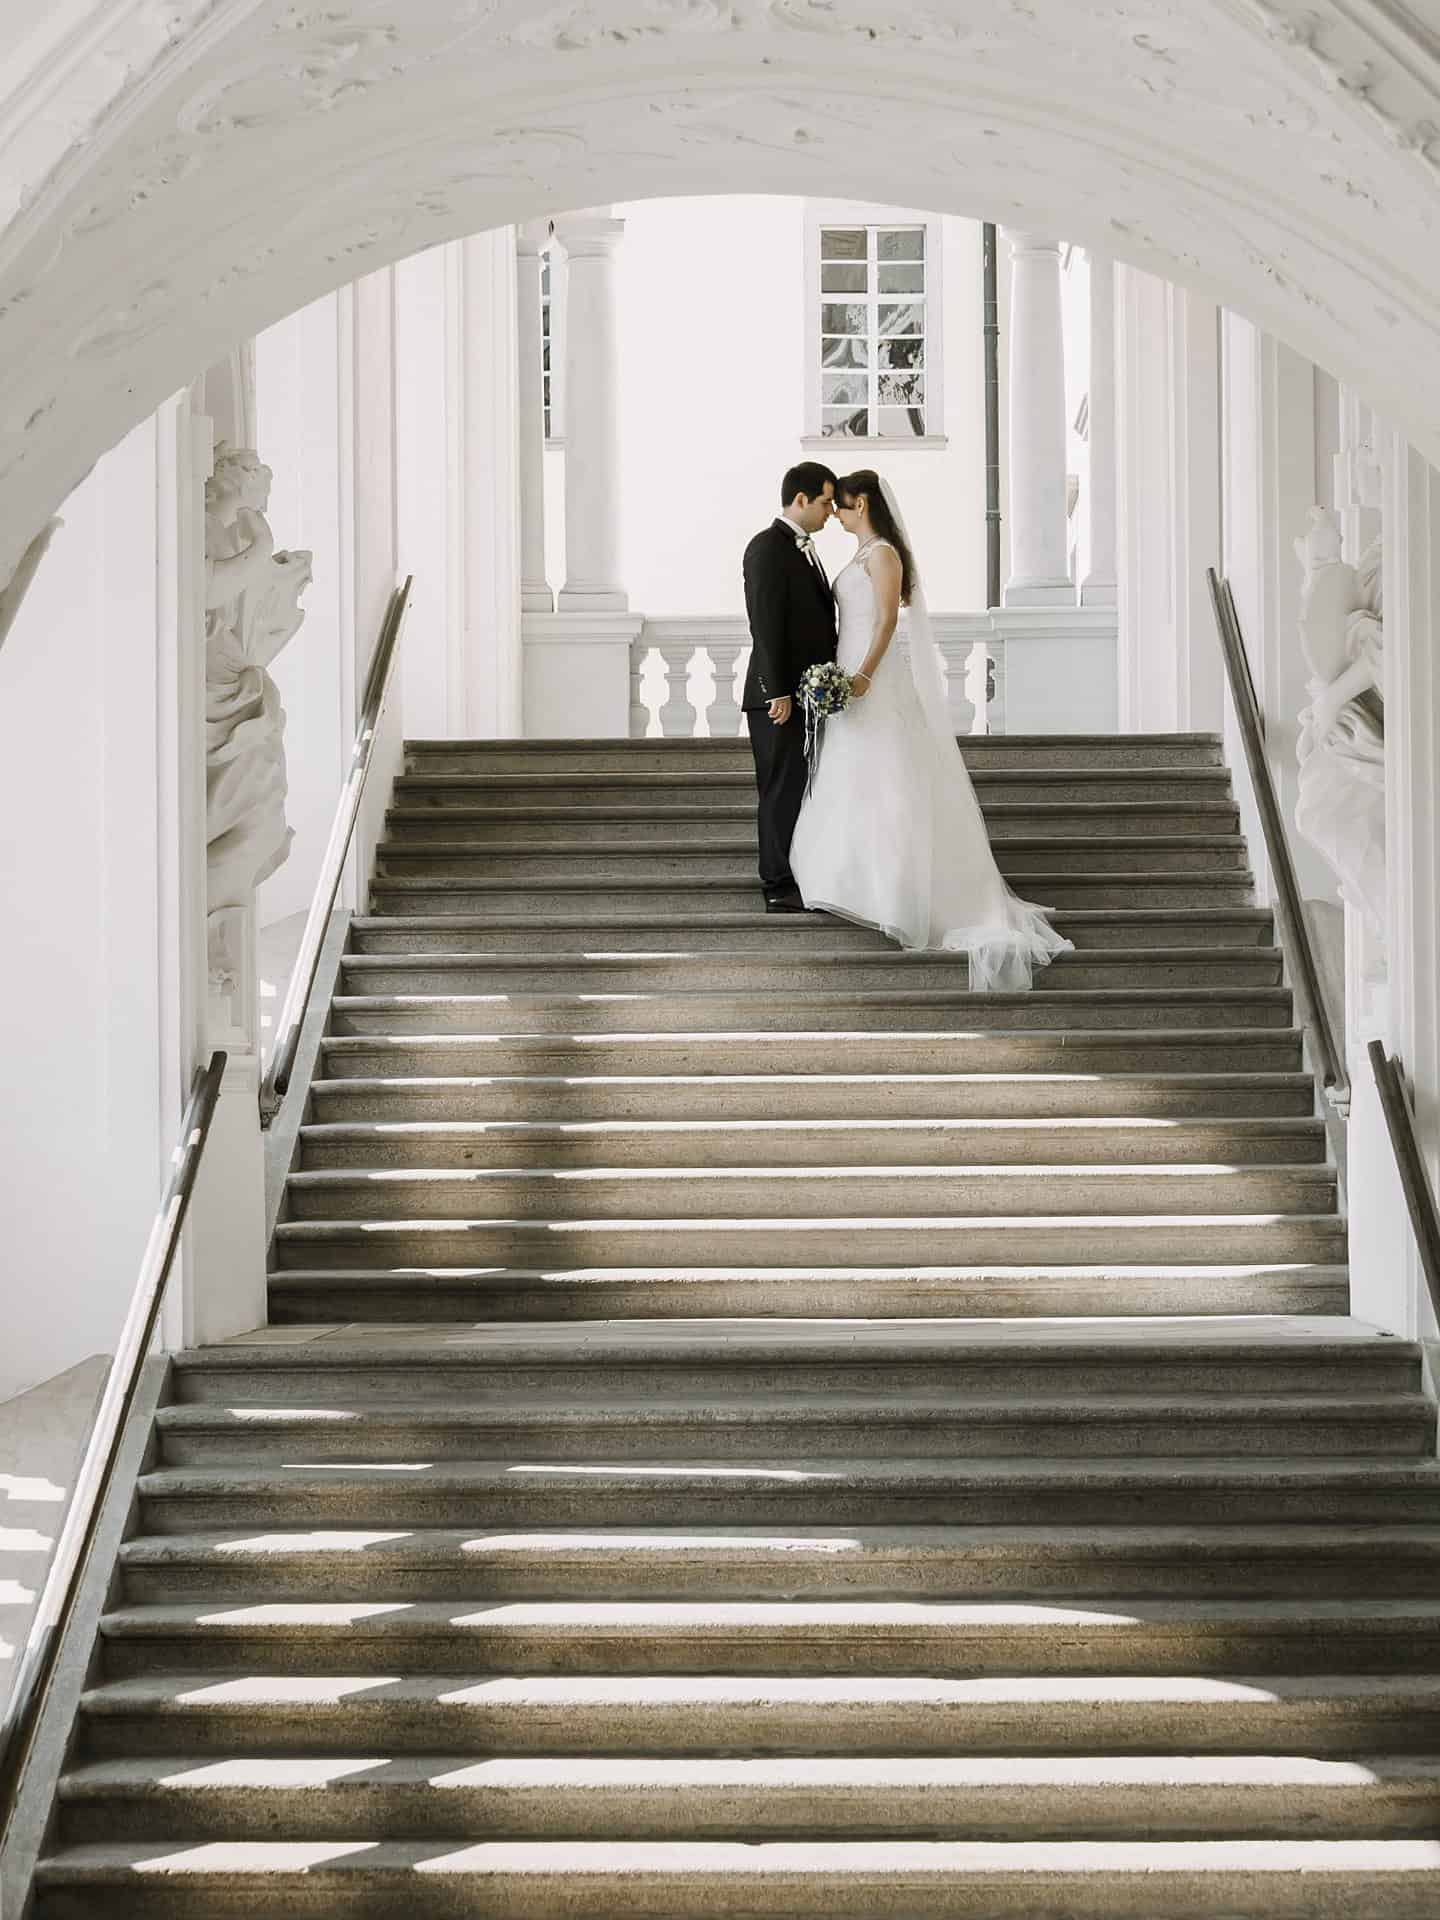 Eine Braut und ein Bräutigam stehen auf den Stufen eines reich verzierten Gebäudes.